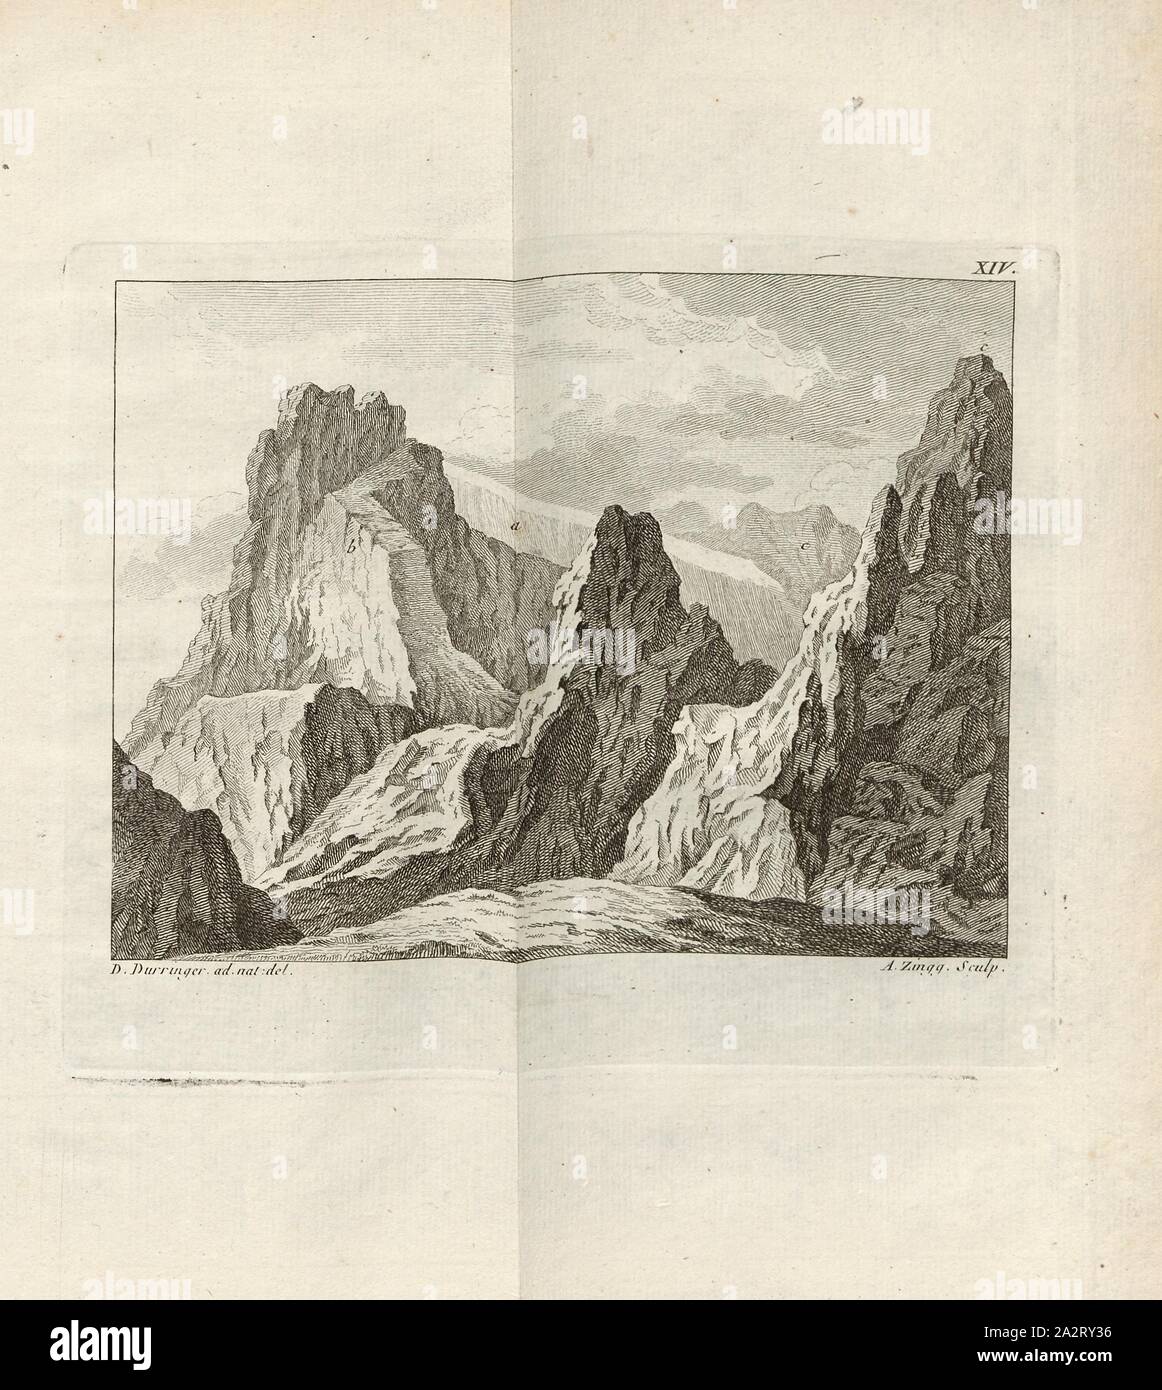 Le Cluster en Glitchenon Ouri Township, vue sur les Alpes d'Uri, avec l'Uri-Rotstock en arrière-plan, signé : D. Durringer (ad nat. Del.) ; A. Zingg (couche externe.), fig. 16, XIV, p. 372 après, p. 411, Düringer, Daniel, (ad nat. del.) ; Zingg, Adrian (1770), sculptures., Gottlieb Sigmund Gruner Louis-Félix Guinement de Keralio ; : Histoire naturelle des glacieres de Suisse. Paris : Panckoucke, MDCCLXX [1770 Banque D'Images